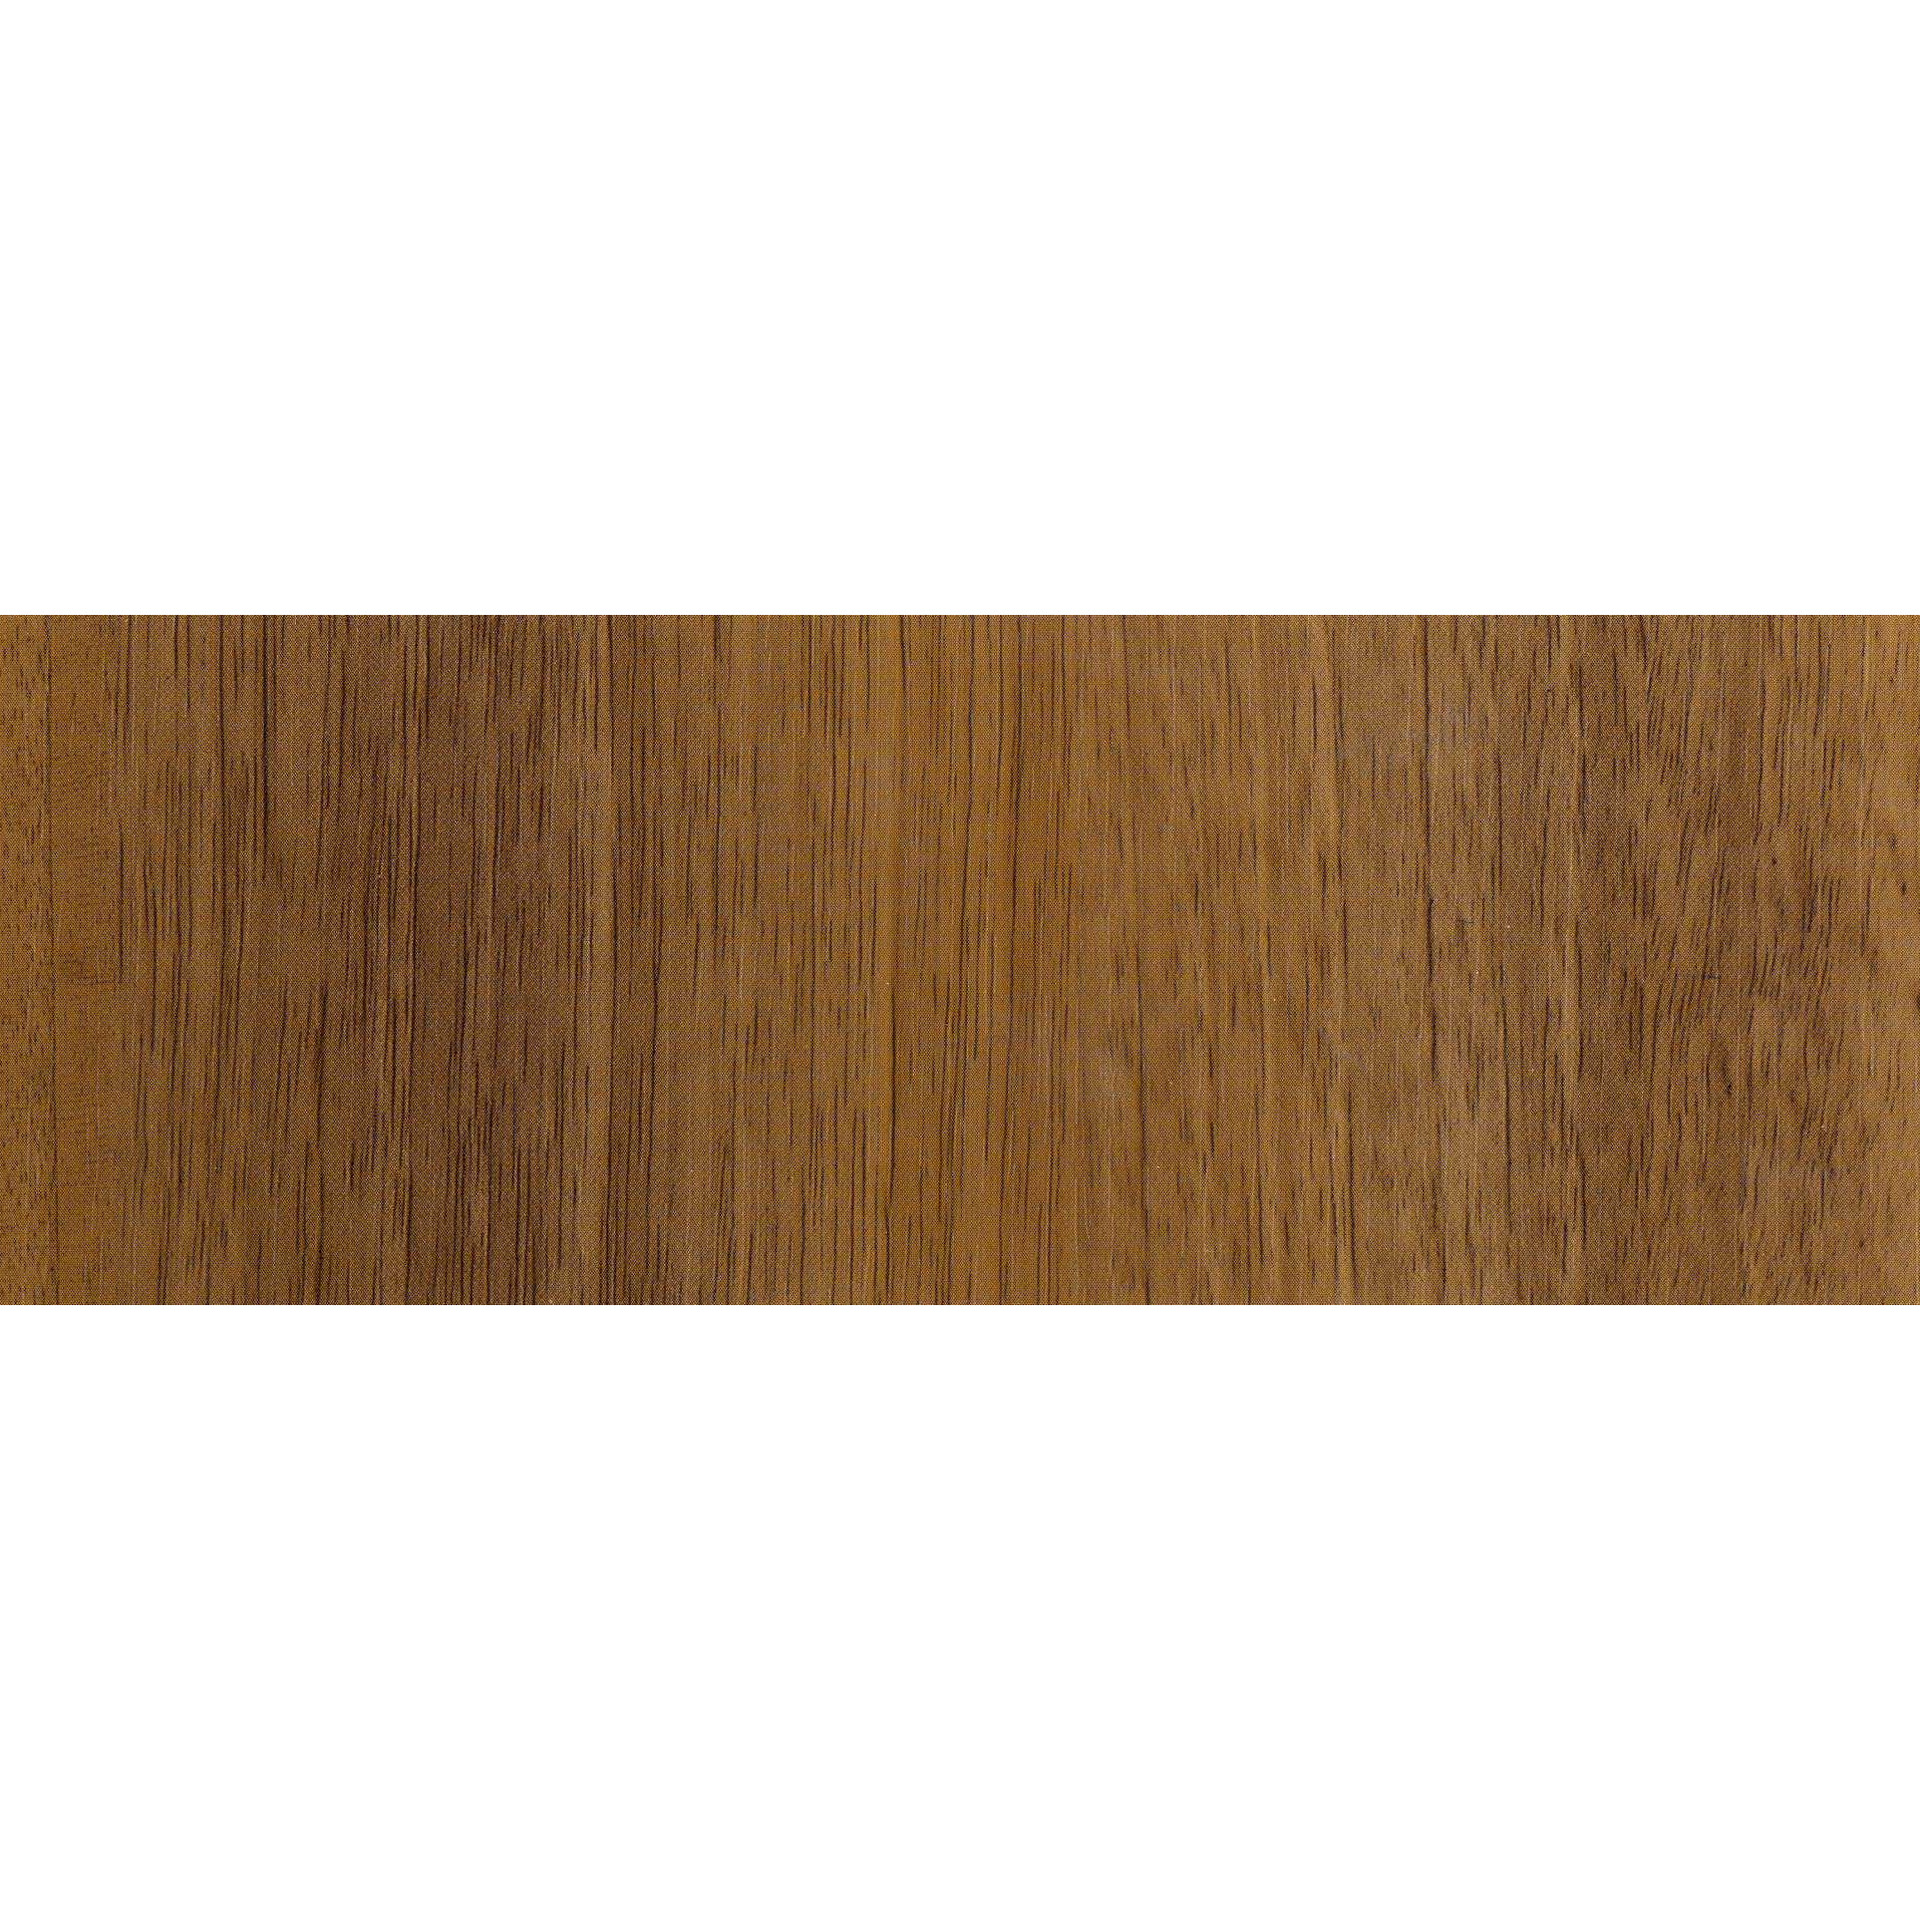 Decoratie plakfolie noten houtnerf look bruin 45 cm x 2 meter zelfklevend